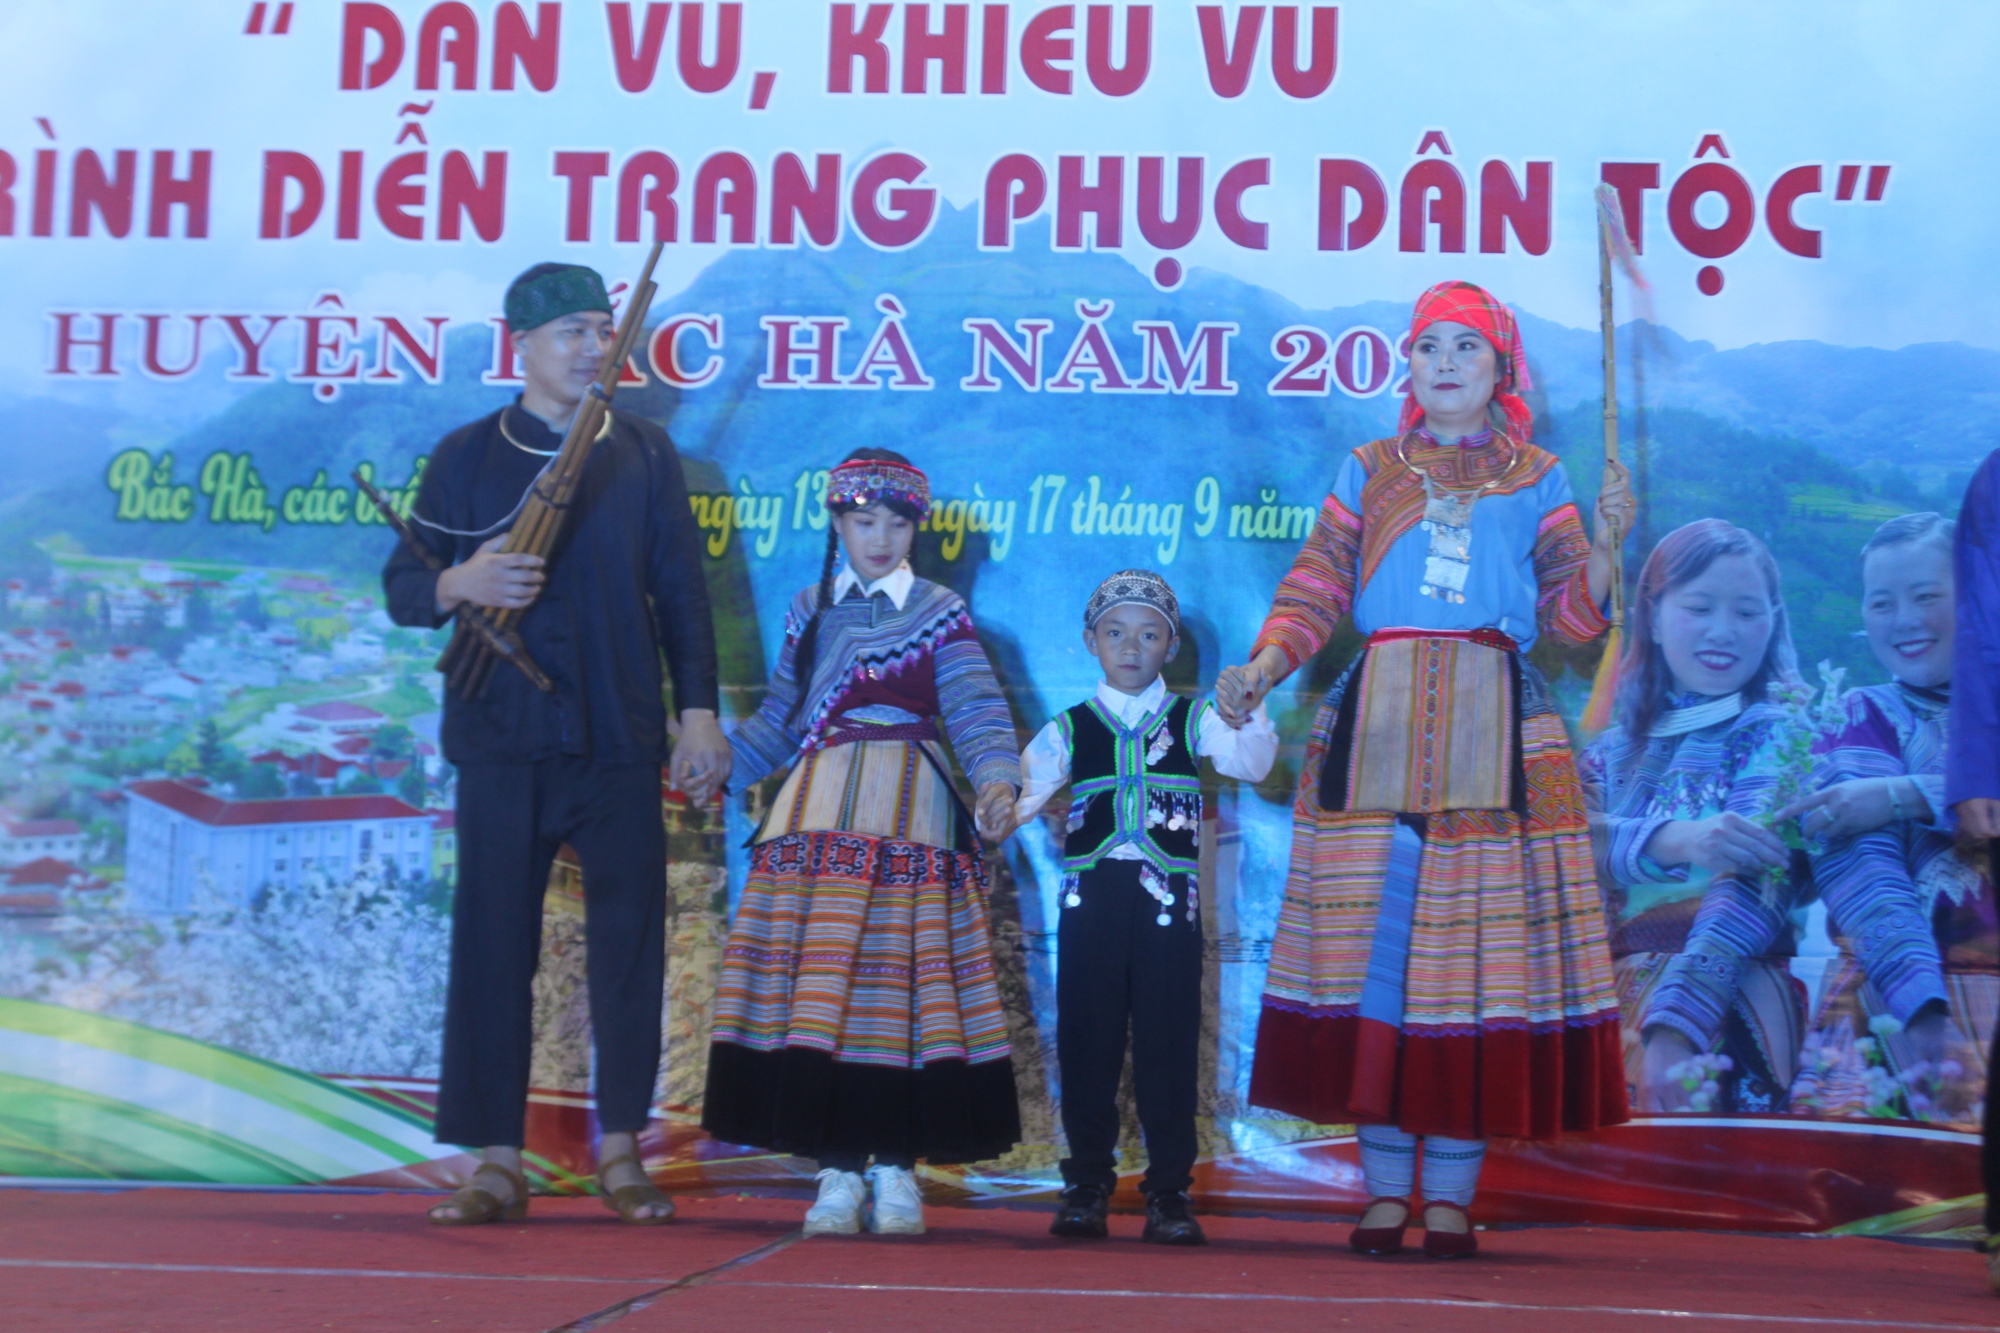 500 người tham gia thi dân vũ, khiêu vũ và trình diễn trang phục dân tộc miền cao nguyên trắng Bắc Hà - Ảnh 1.